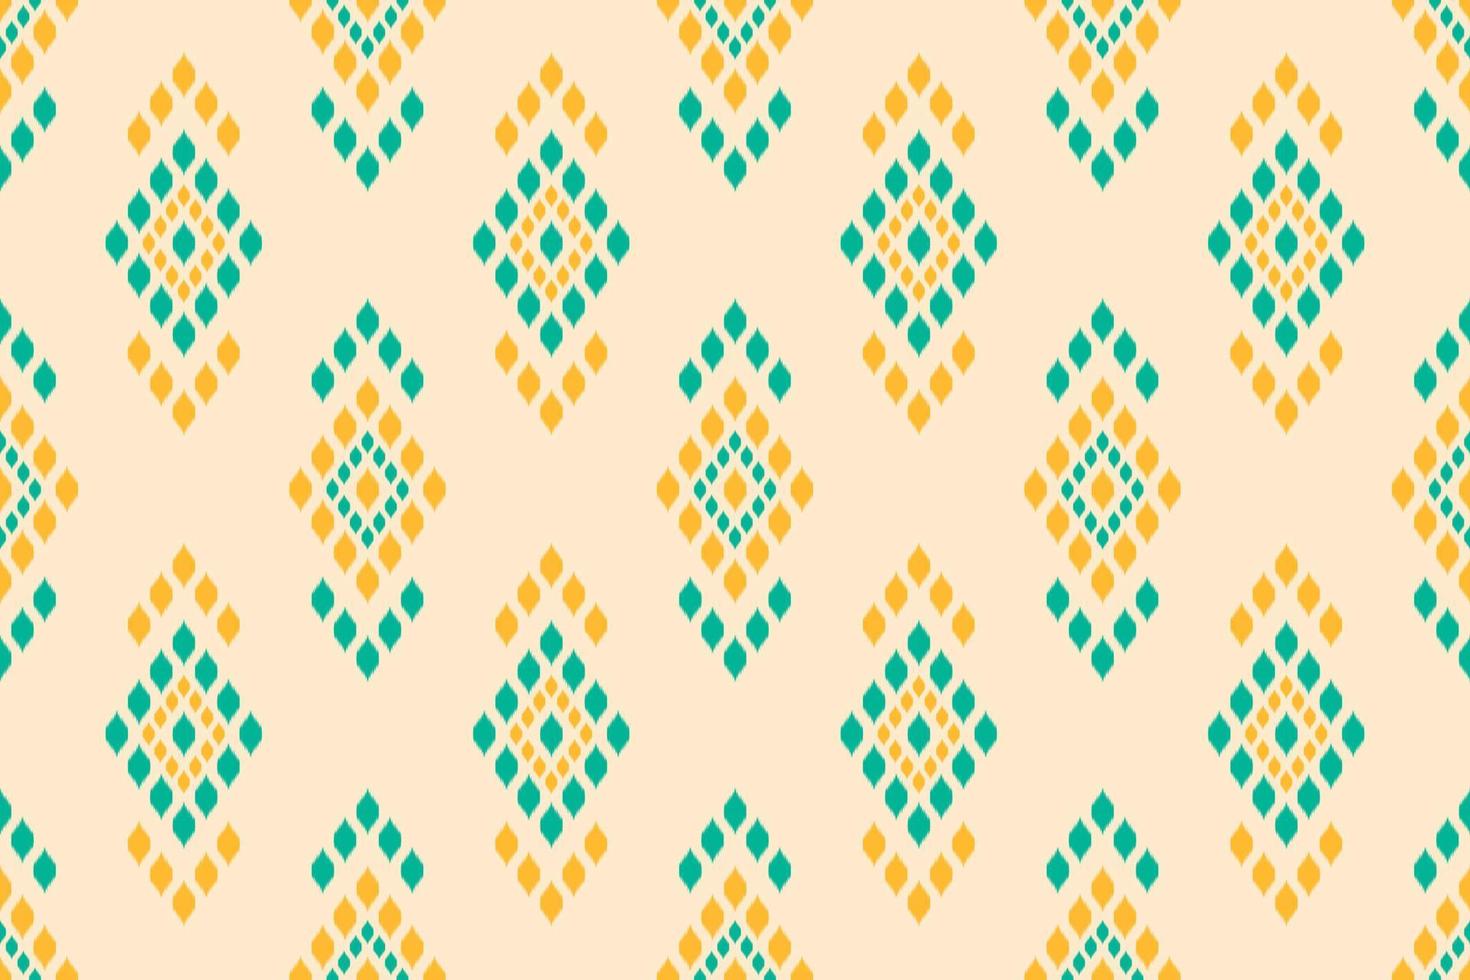 ikat étnico geométrico de patrones sin fisuras tradicional. tela estilo indio. vector